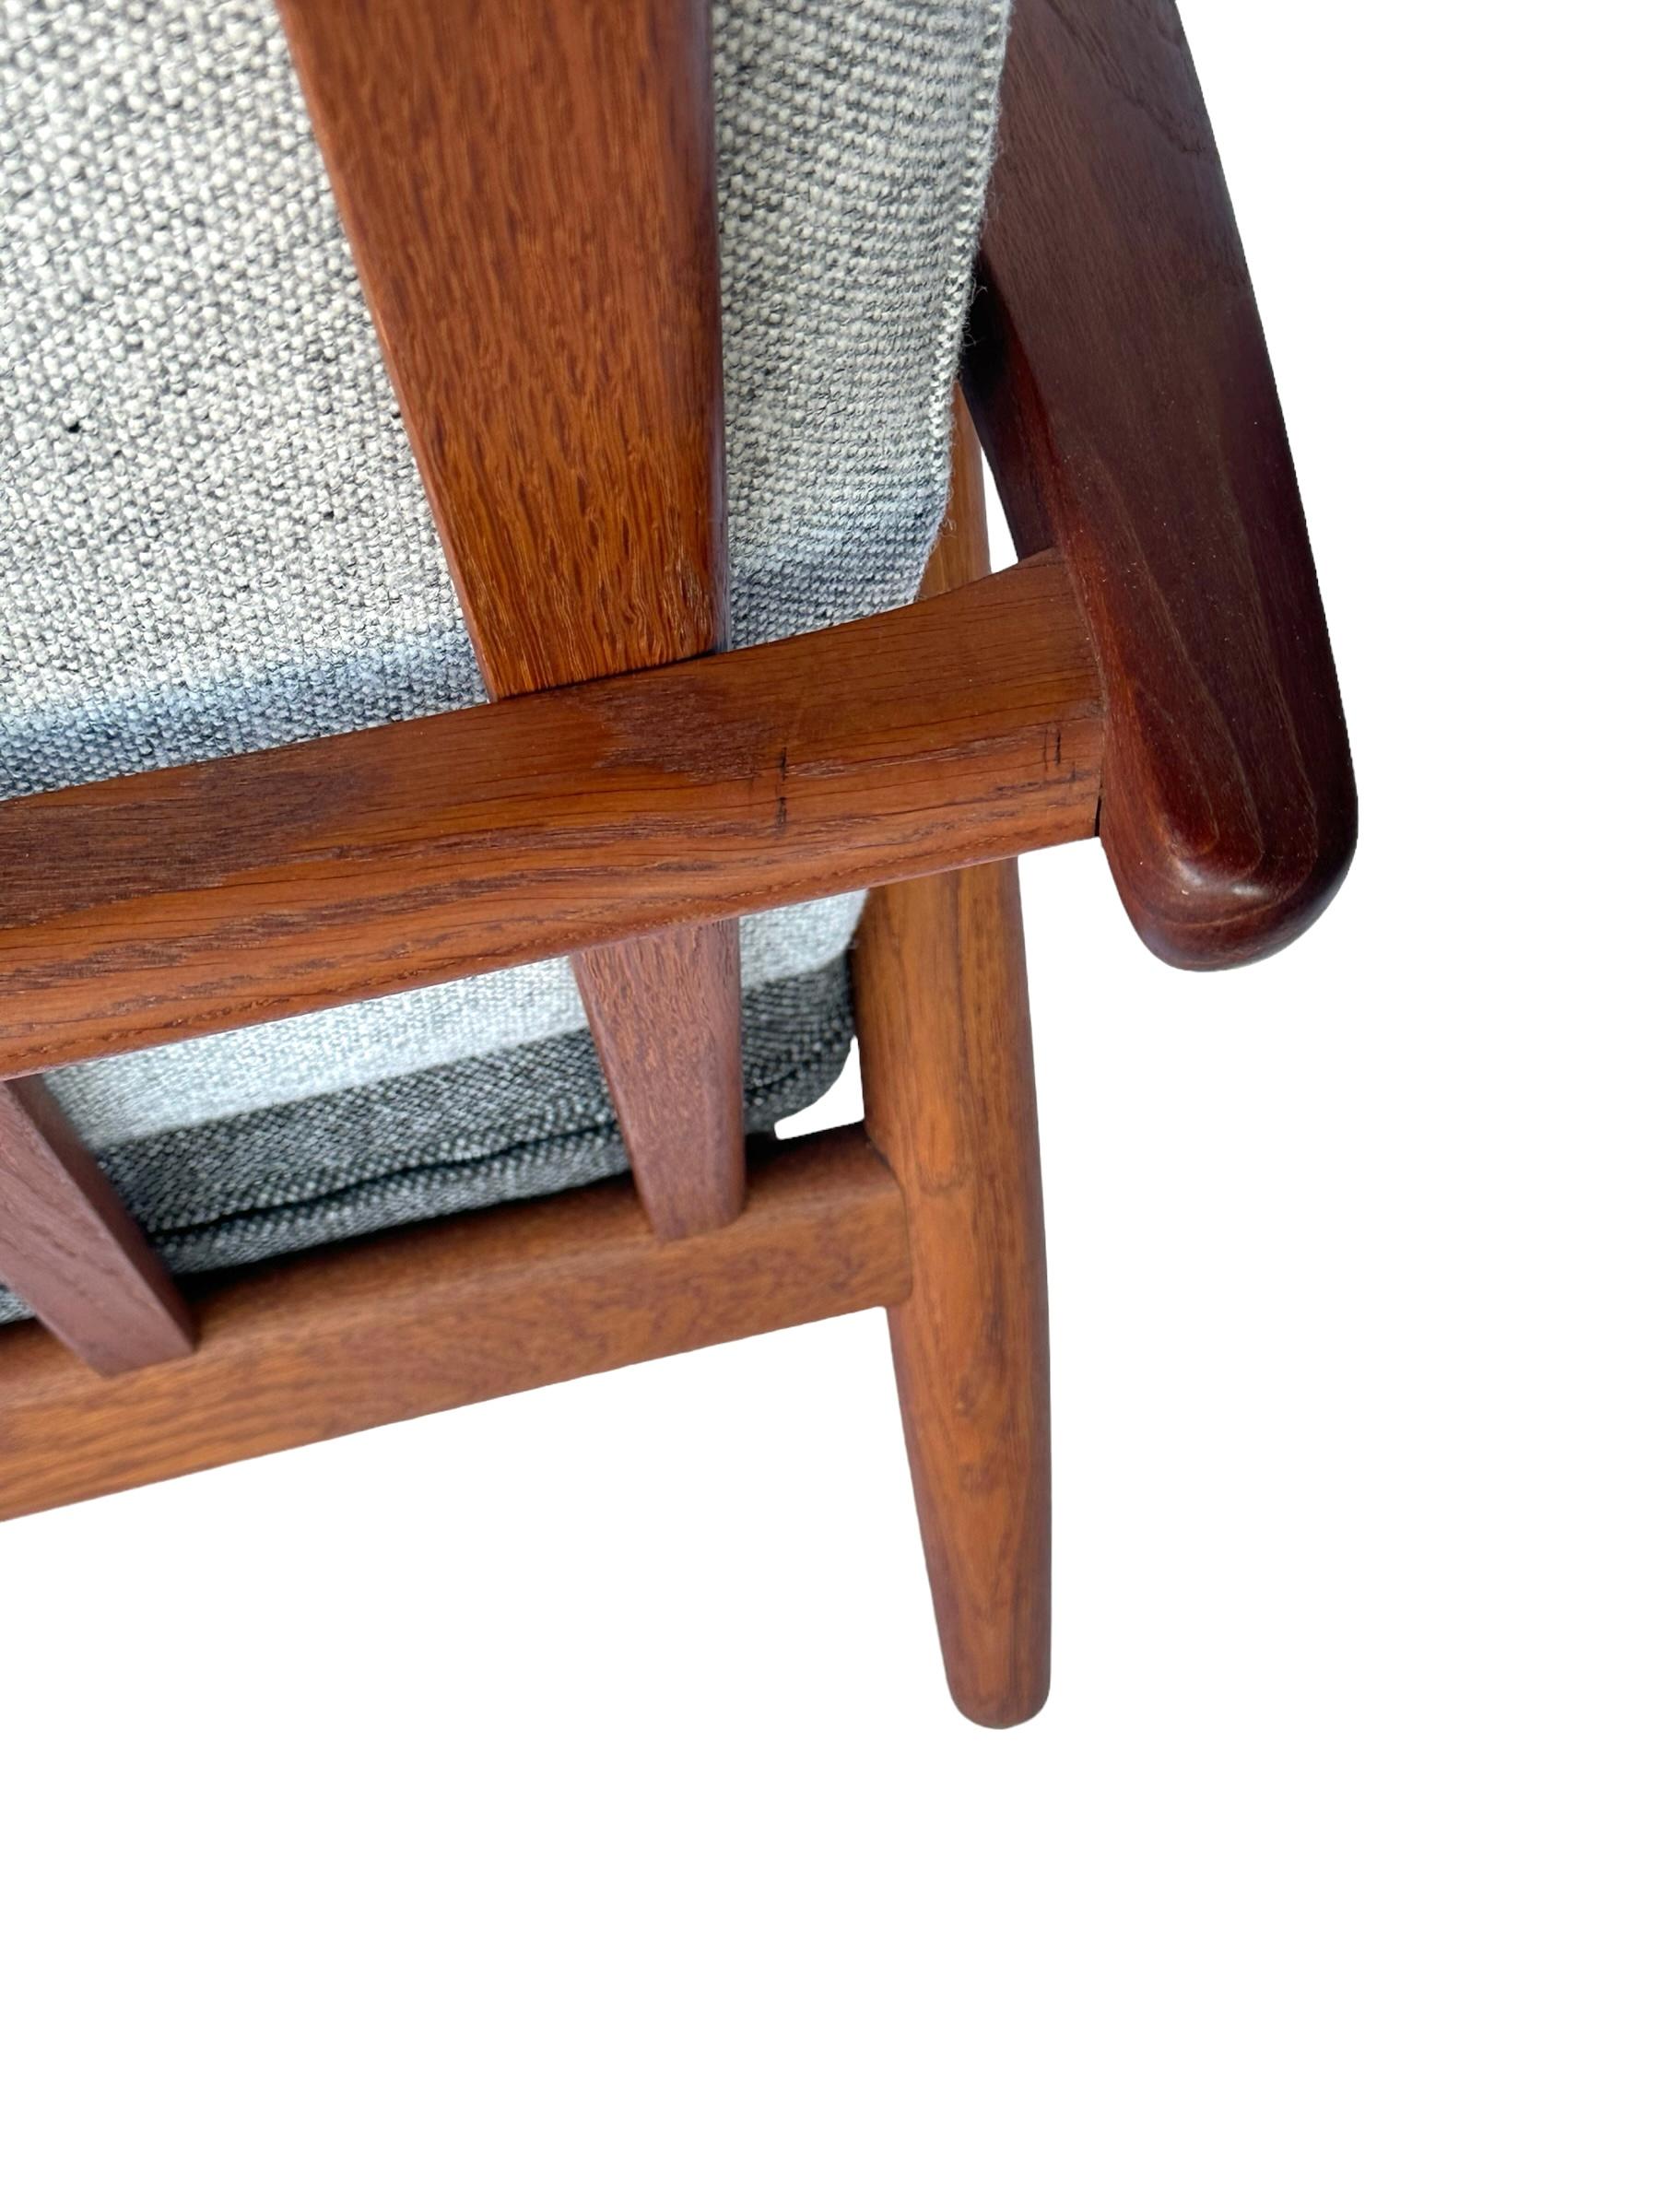 Hans J. Wegner Cigar Lounge Chair in Teak with New Maharam Upholstery For Sale 7